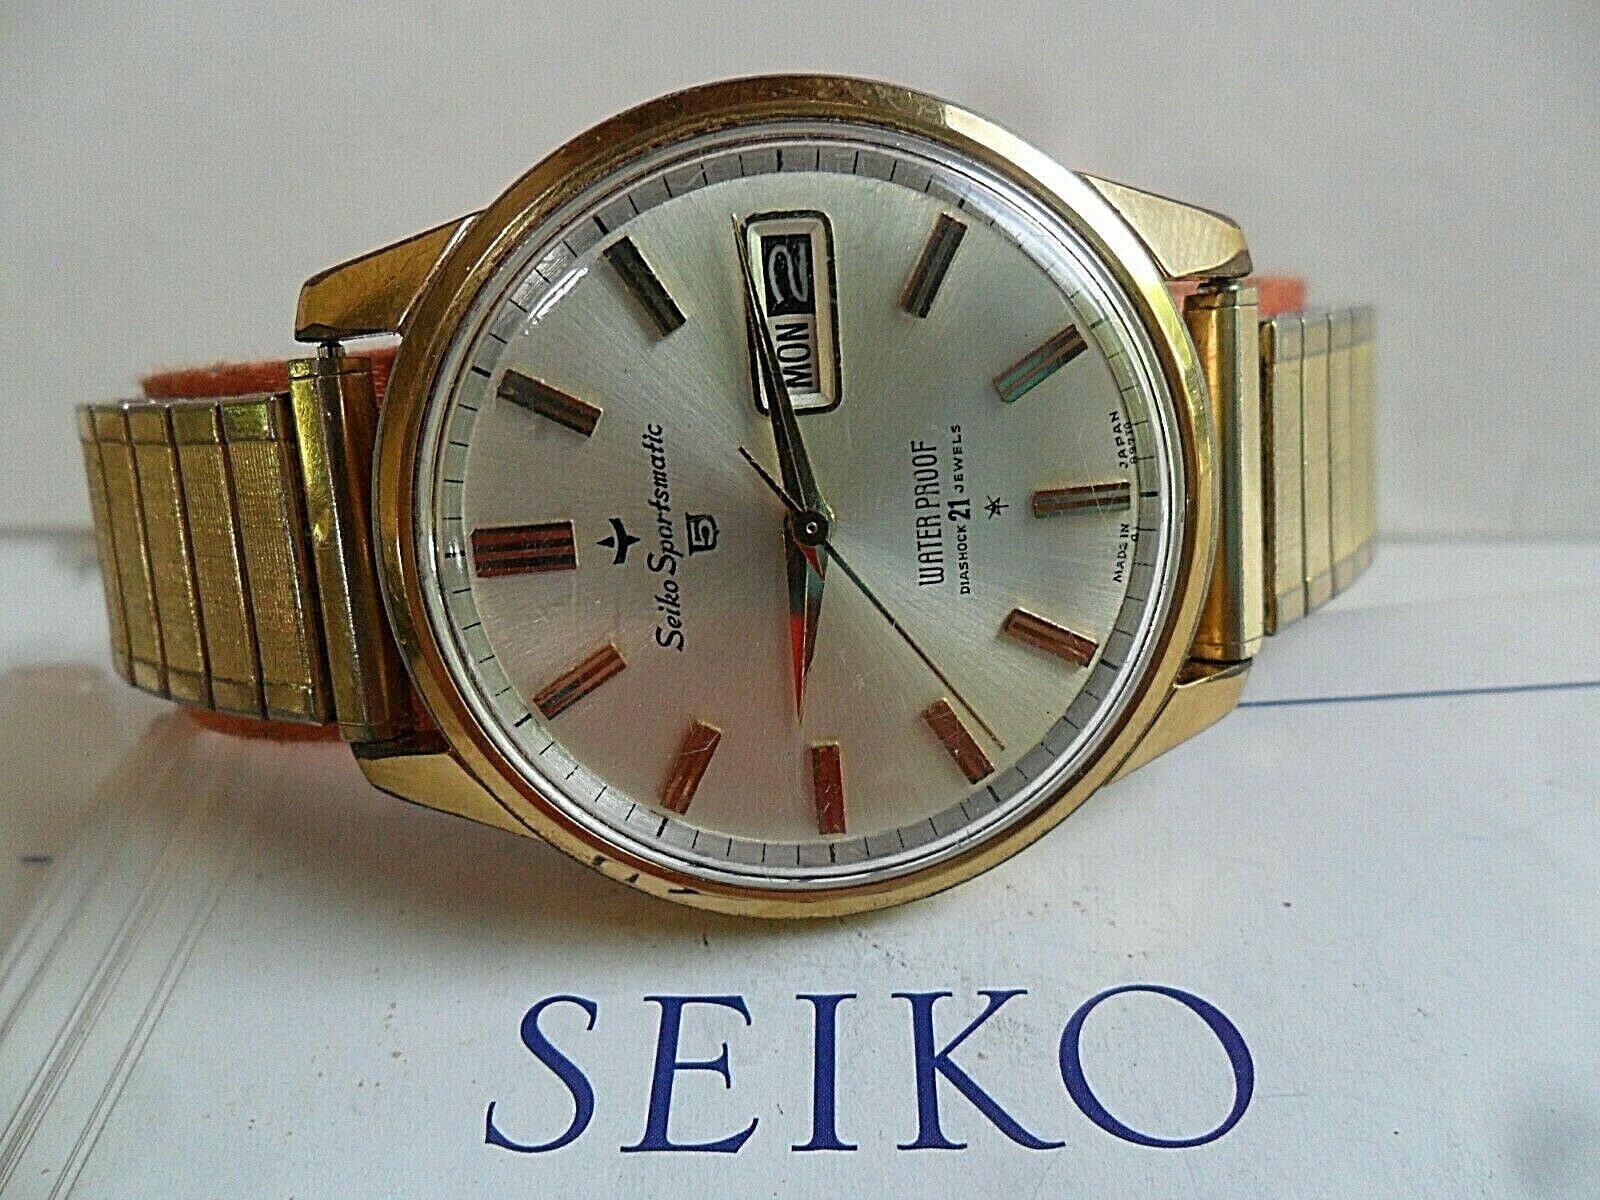 Seiko Sportsmatic 5 (6619-8970) Market Price | WatchCharts